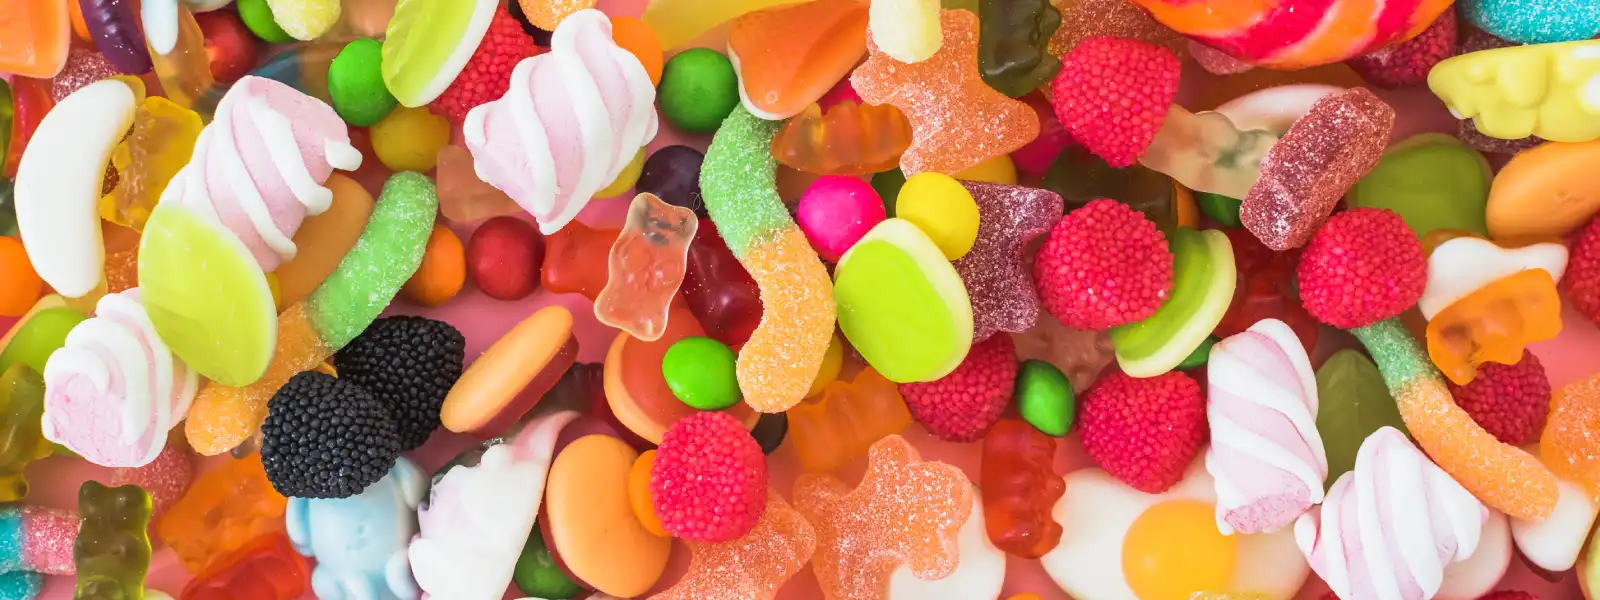 Şekerli Gıdaların Bağışıklığa Zararları Nelerdir?